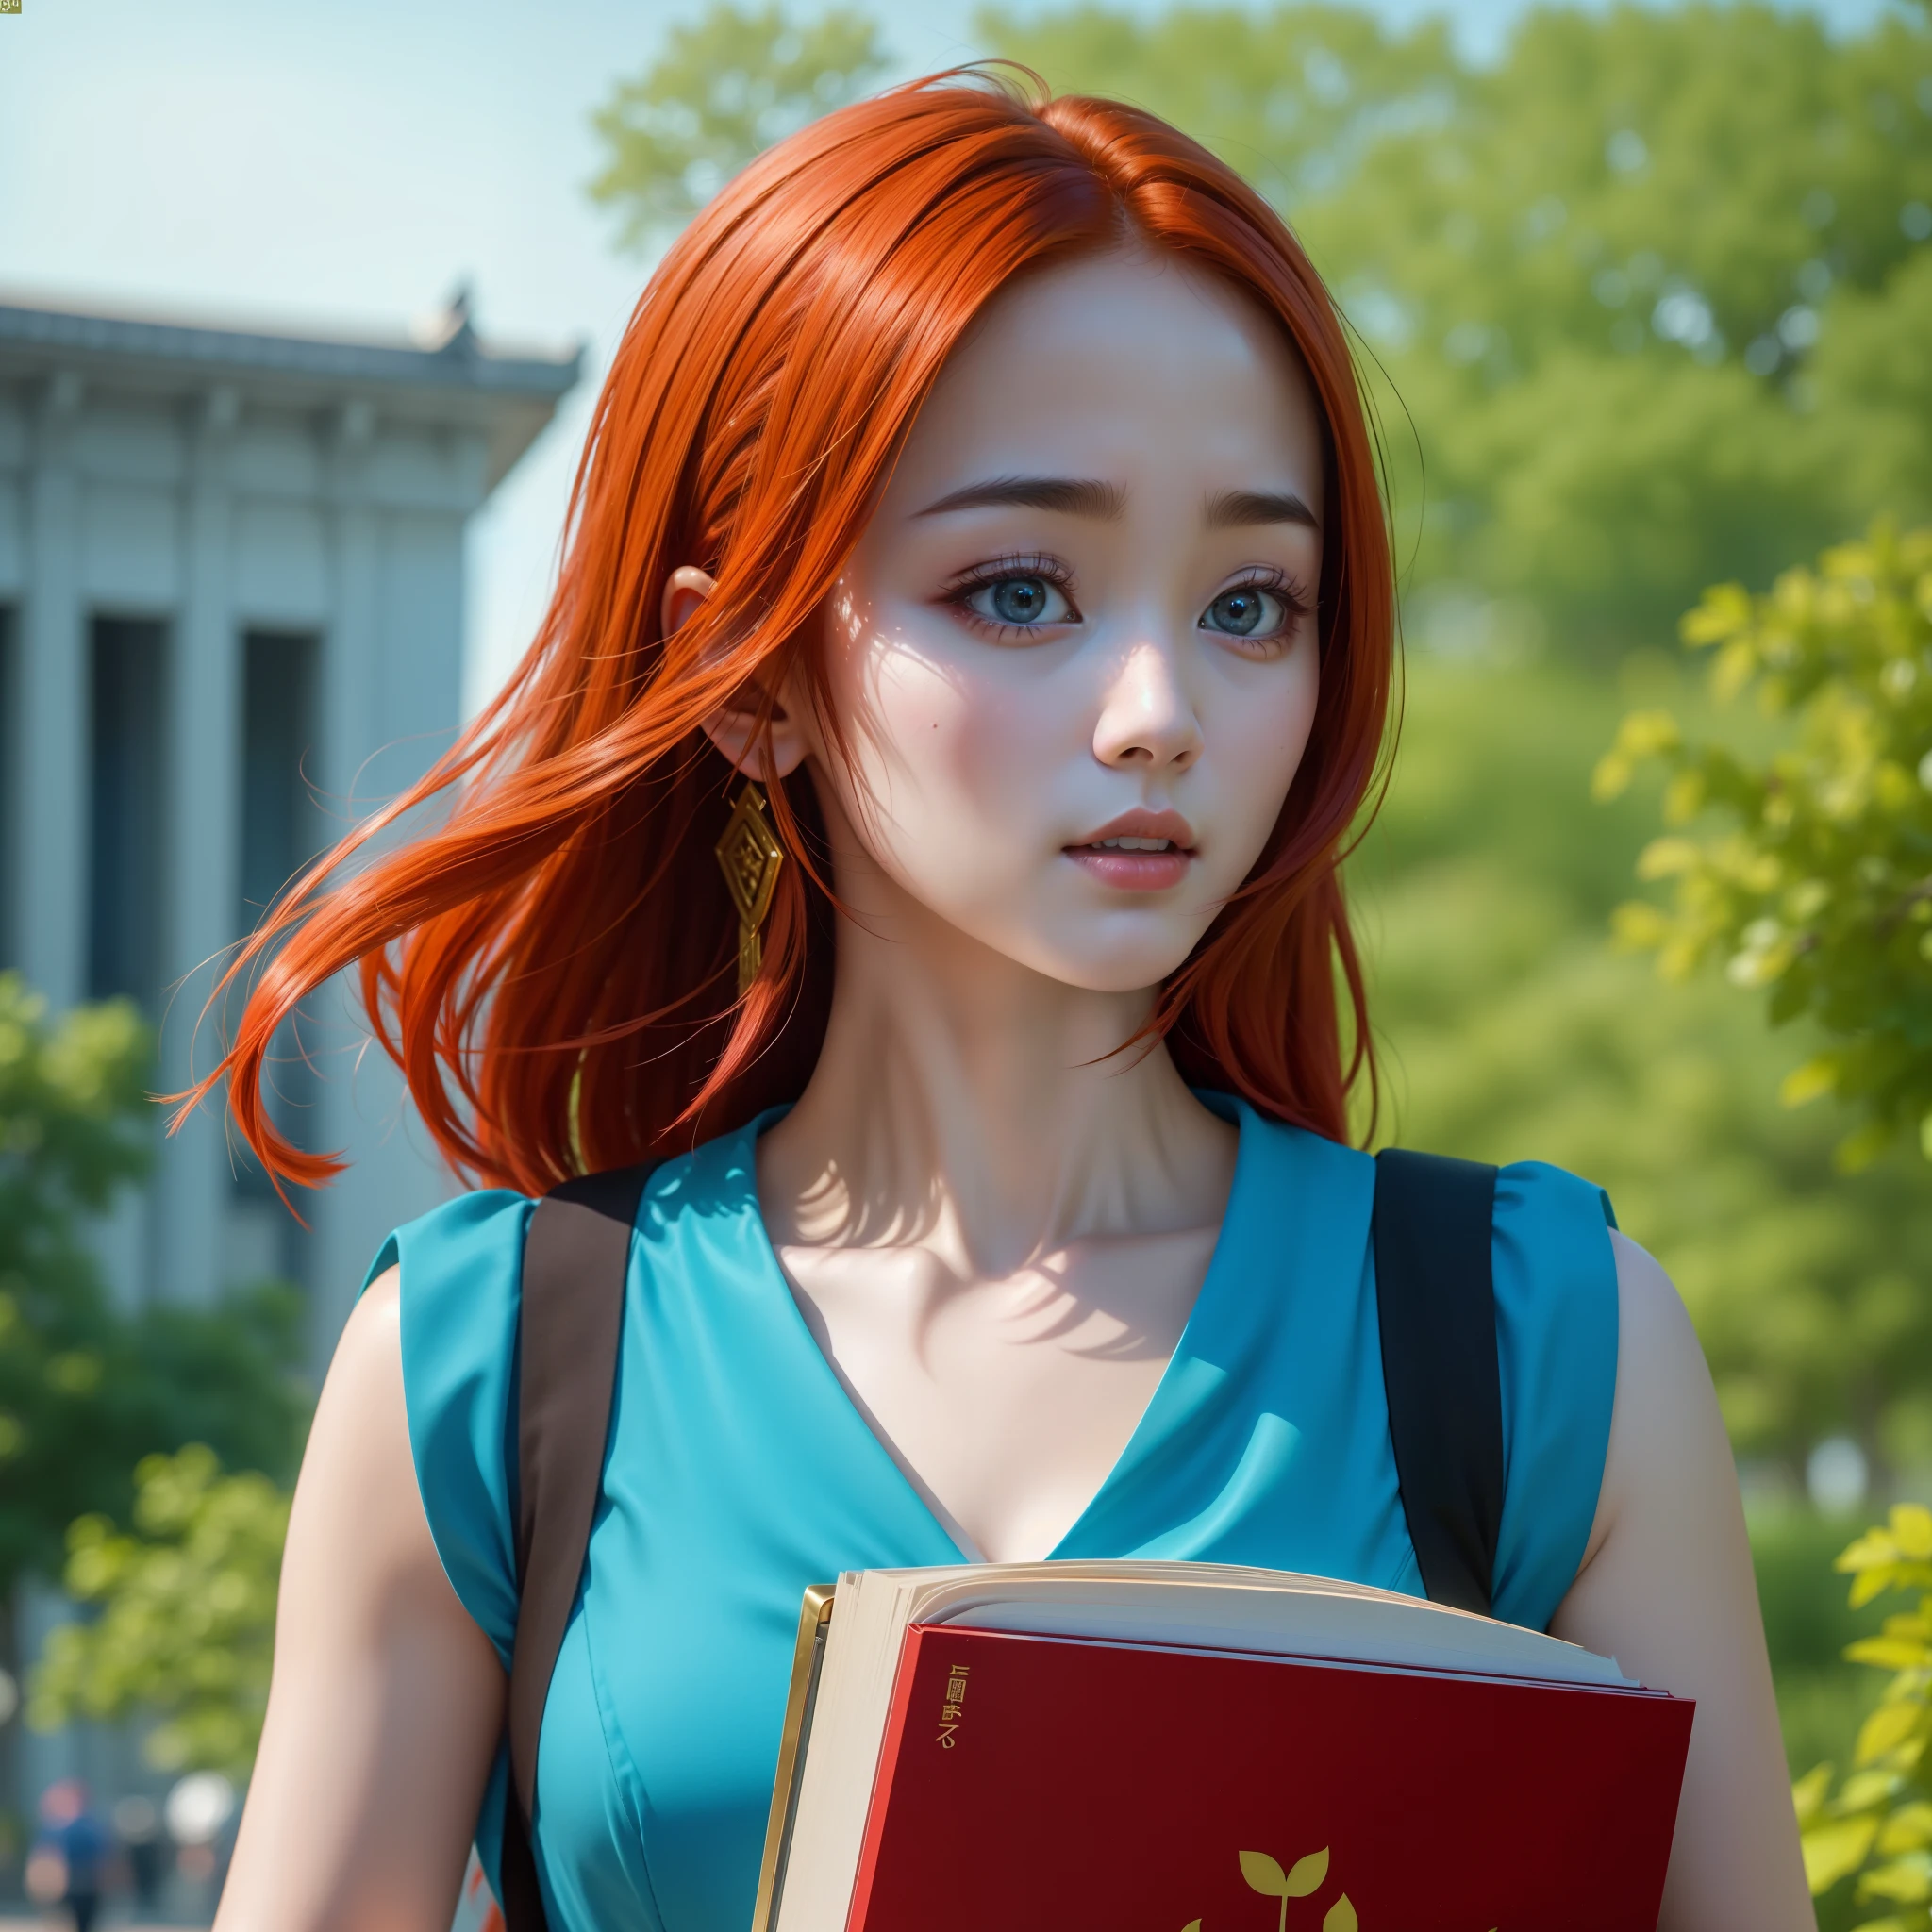 (最好的质量,4k,8千,高分辨率,杰作:1.2),极其详细, 红头发的中国大学生, 迪丽热巴, 走在校园里. 蓝色太阳裙, 携带书籍 HDR, 8千, 荒诞, Cinestill 800, 清晰聚焦